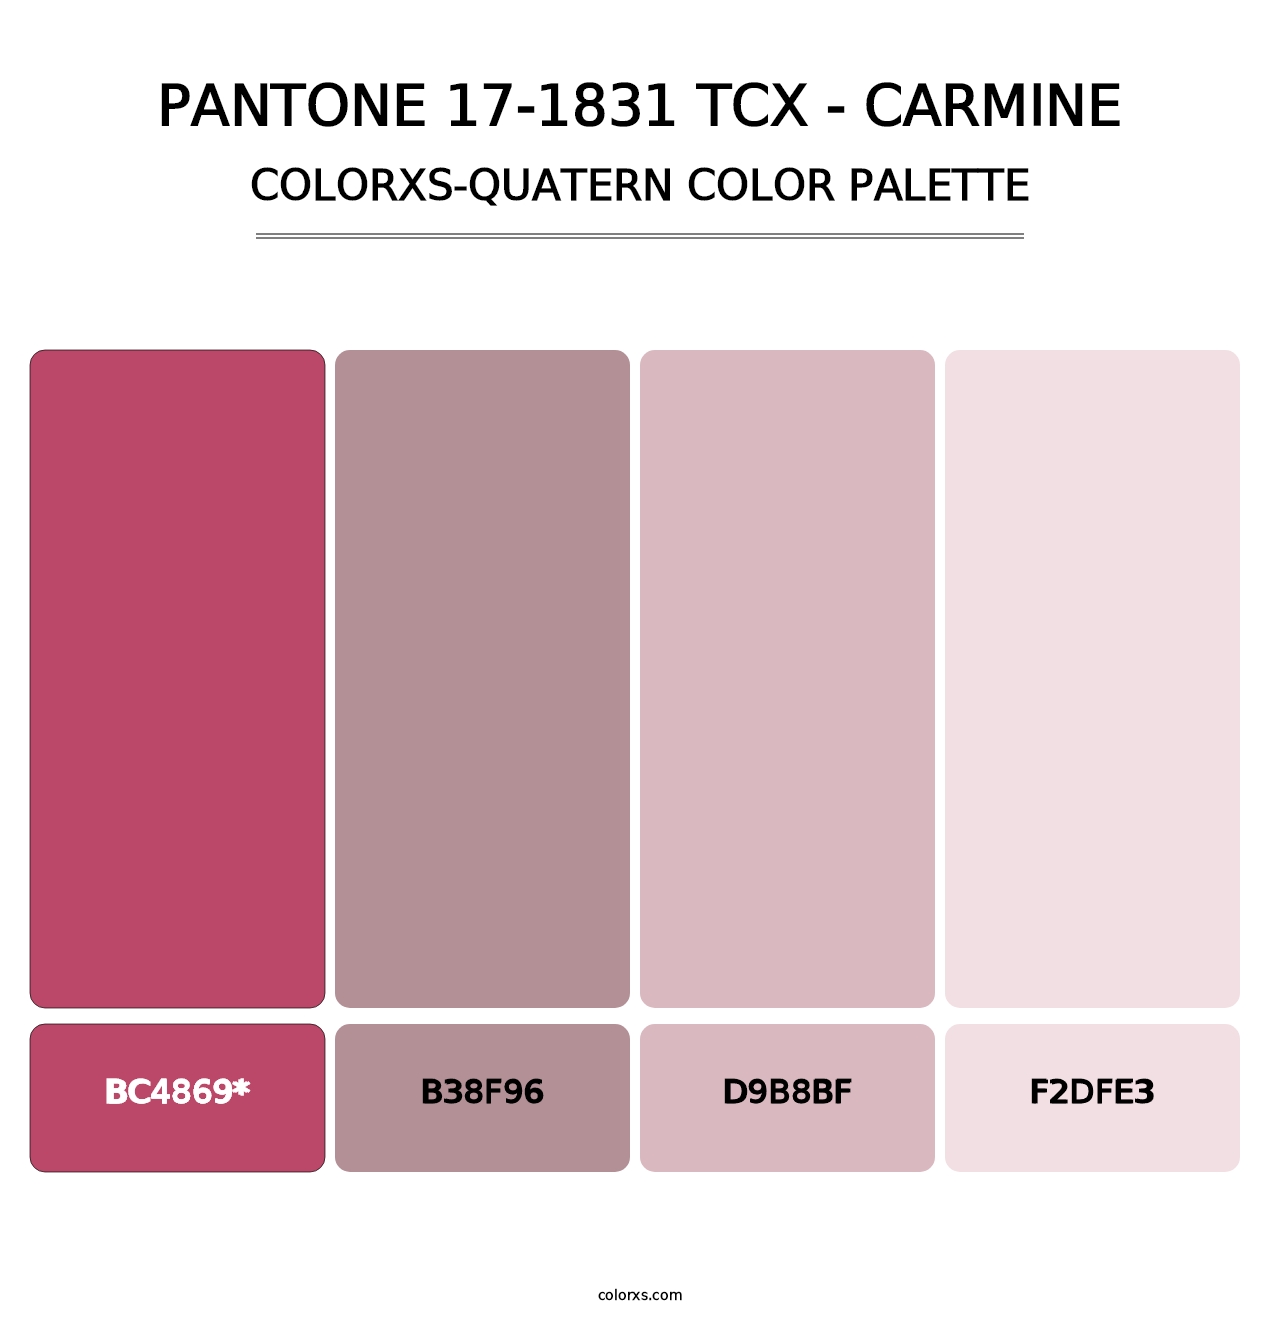 PANTONE 17-1831 TCX - Carmine - Colorxs Quatern Palette